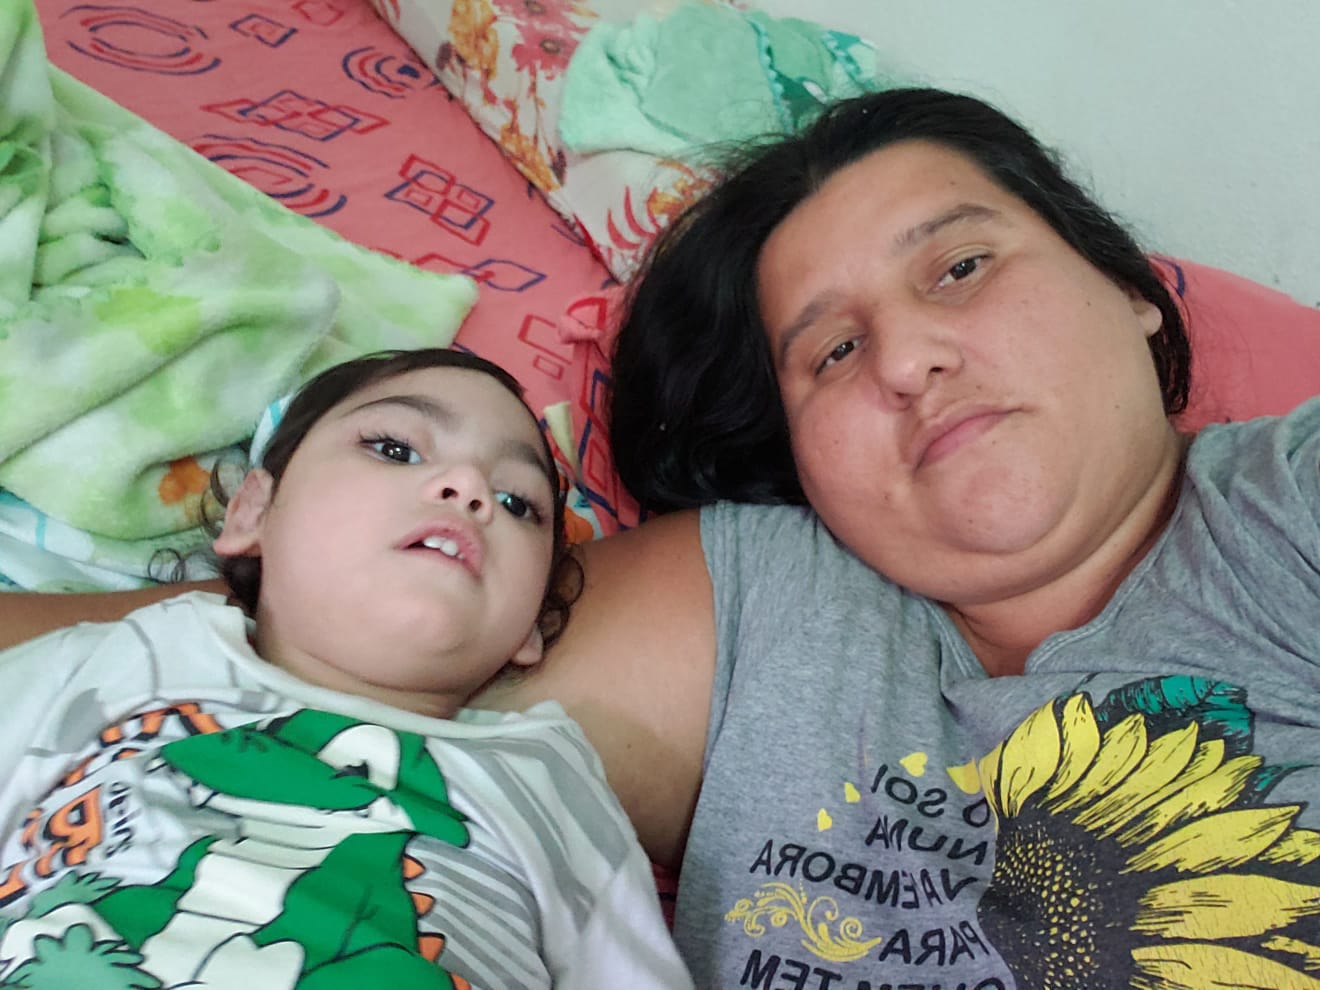 FINAL TRISTE: Criança com microcefalia morre e família pede ajuda para pagar dívidas